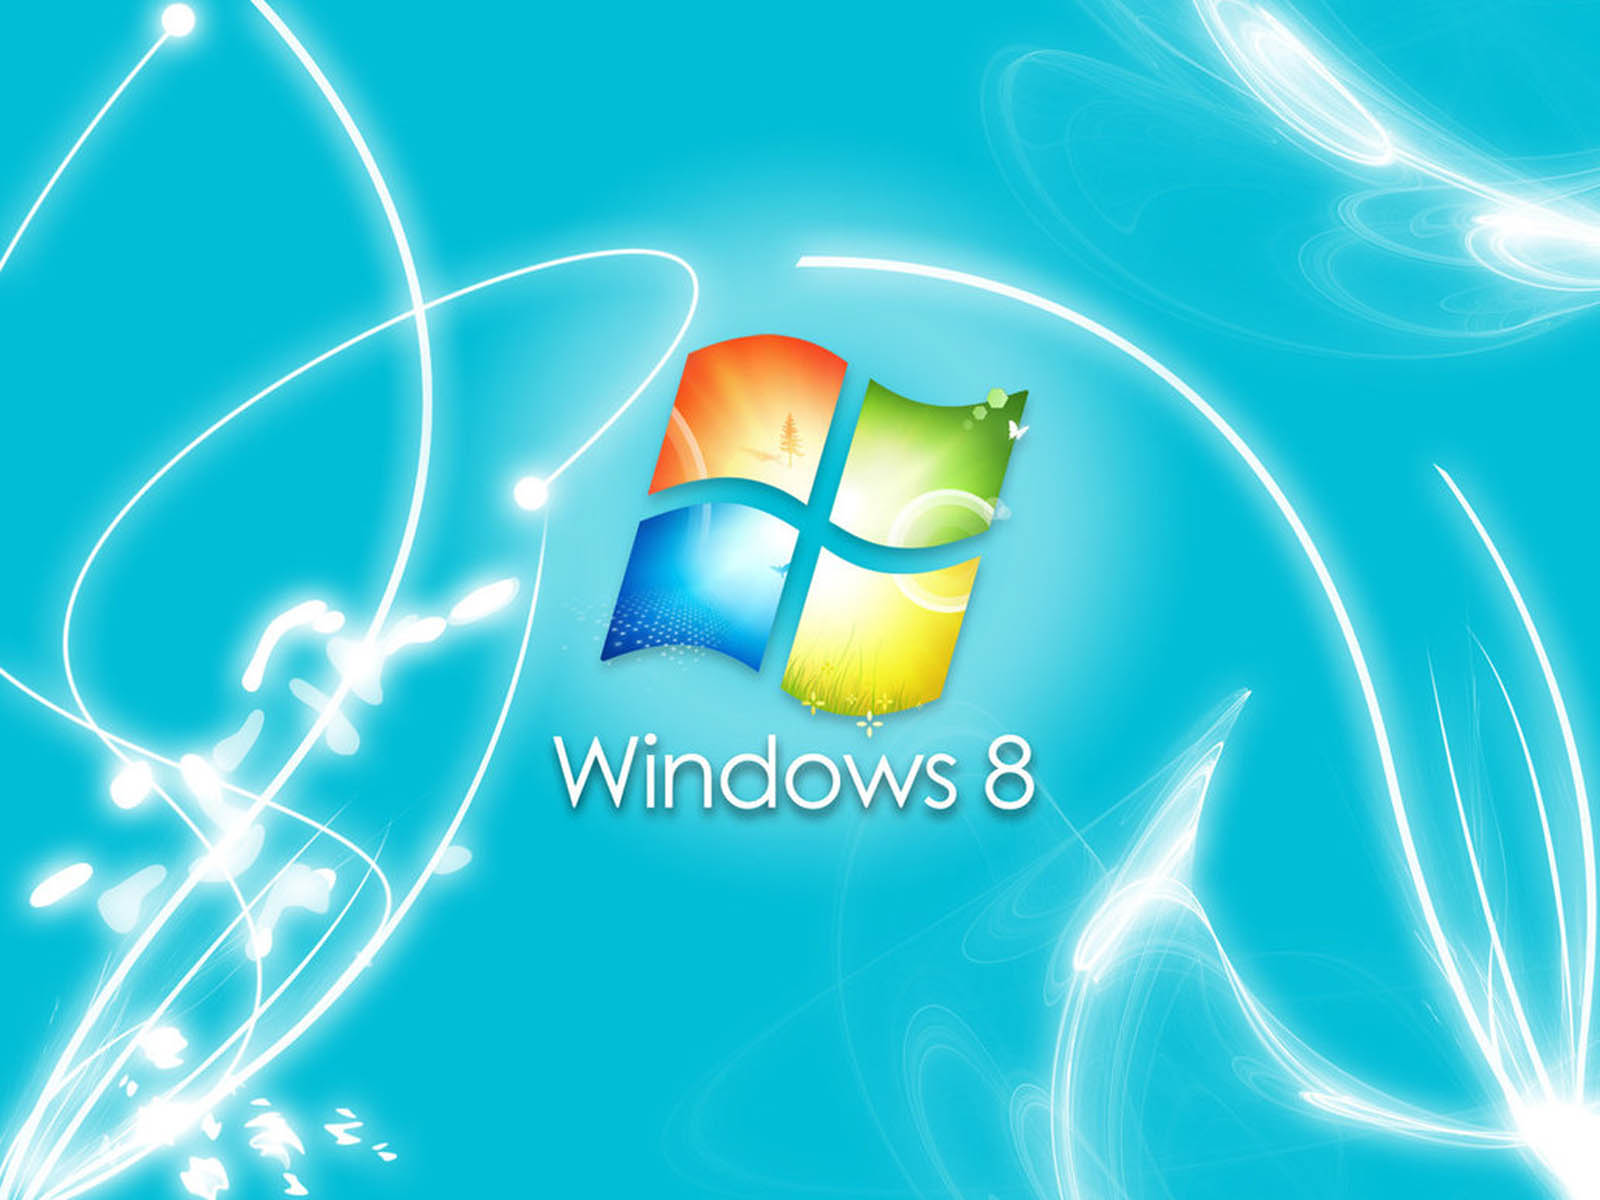 Để có được một desktop đẹp hơn trên hệ điều hành Windows 8, bạn cần một bộ sưu tập hình nền đa dạng và phong phú. Chúng tôi cung cấp hàng ngàn lựa chọn hình nền với chất lượng ấn tượng để tùy biến desktop của bạn. Hãy ghé thăm trang web của chúng tôi để tìm kiếm hình nền ưng ý cho riêng mình.